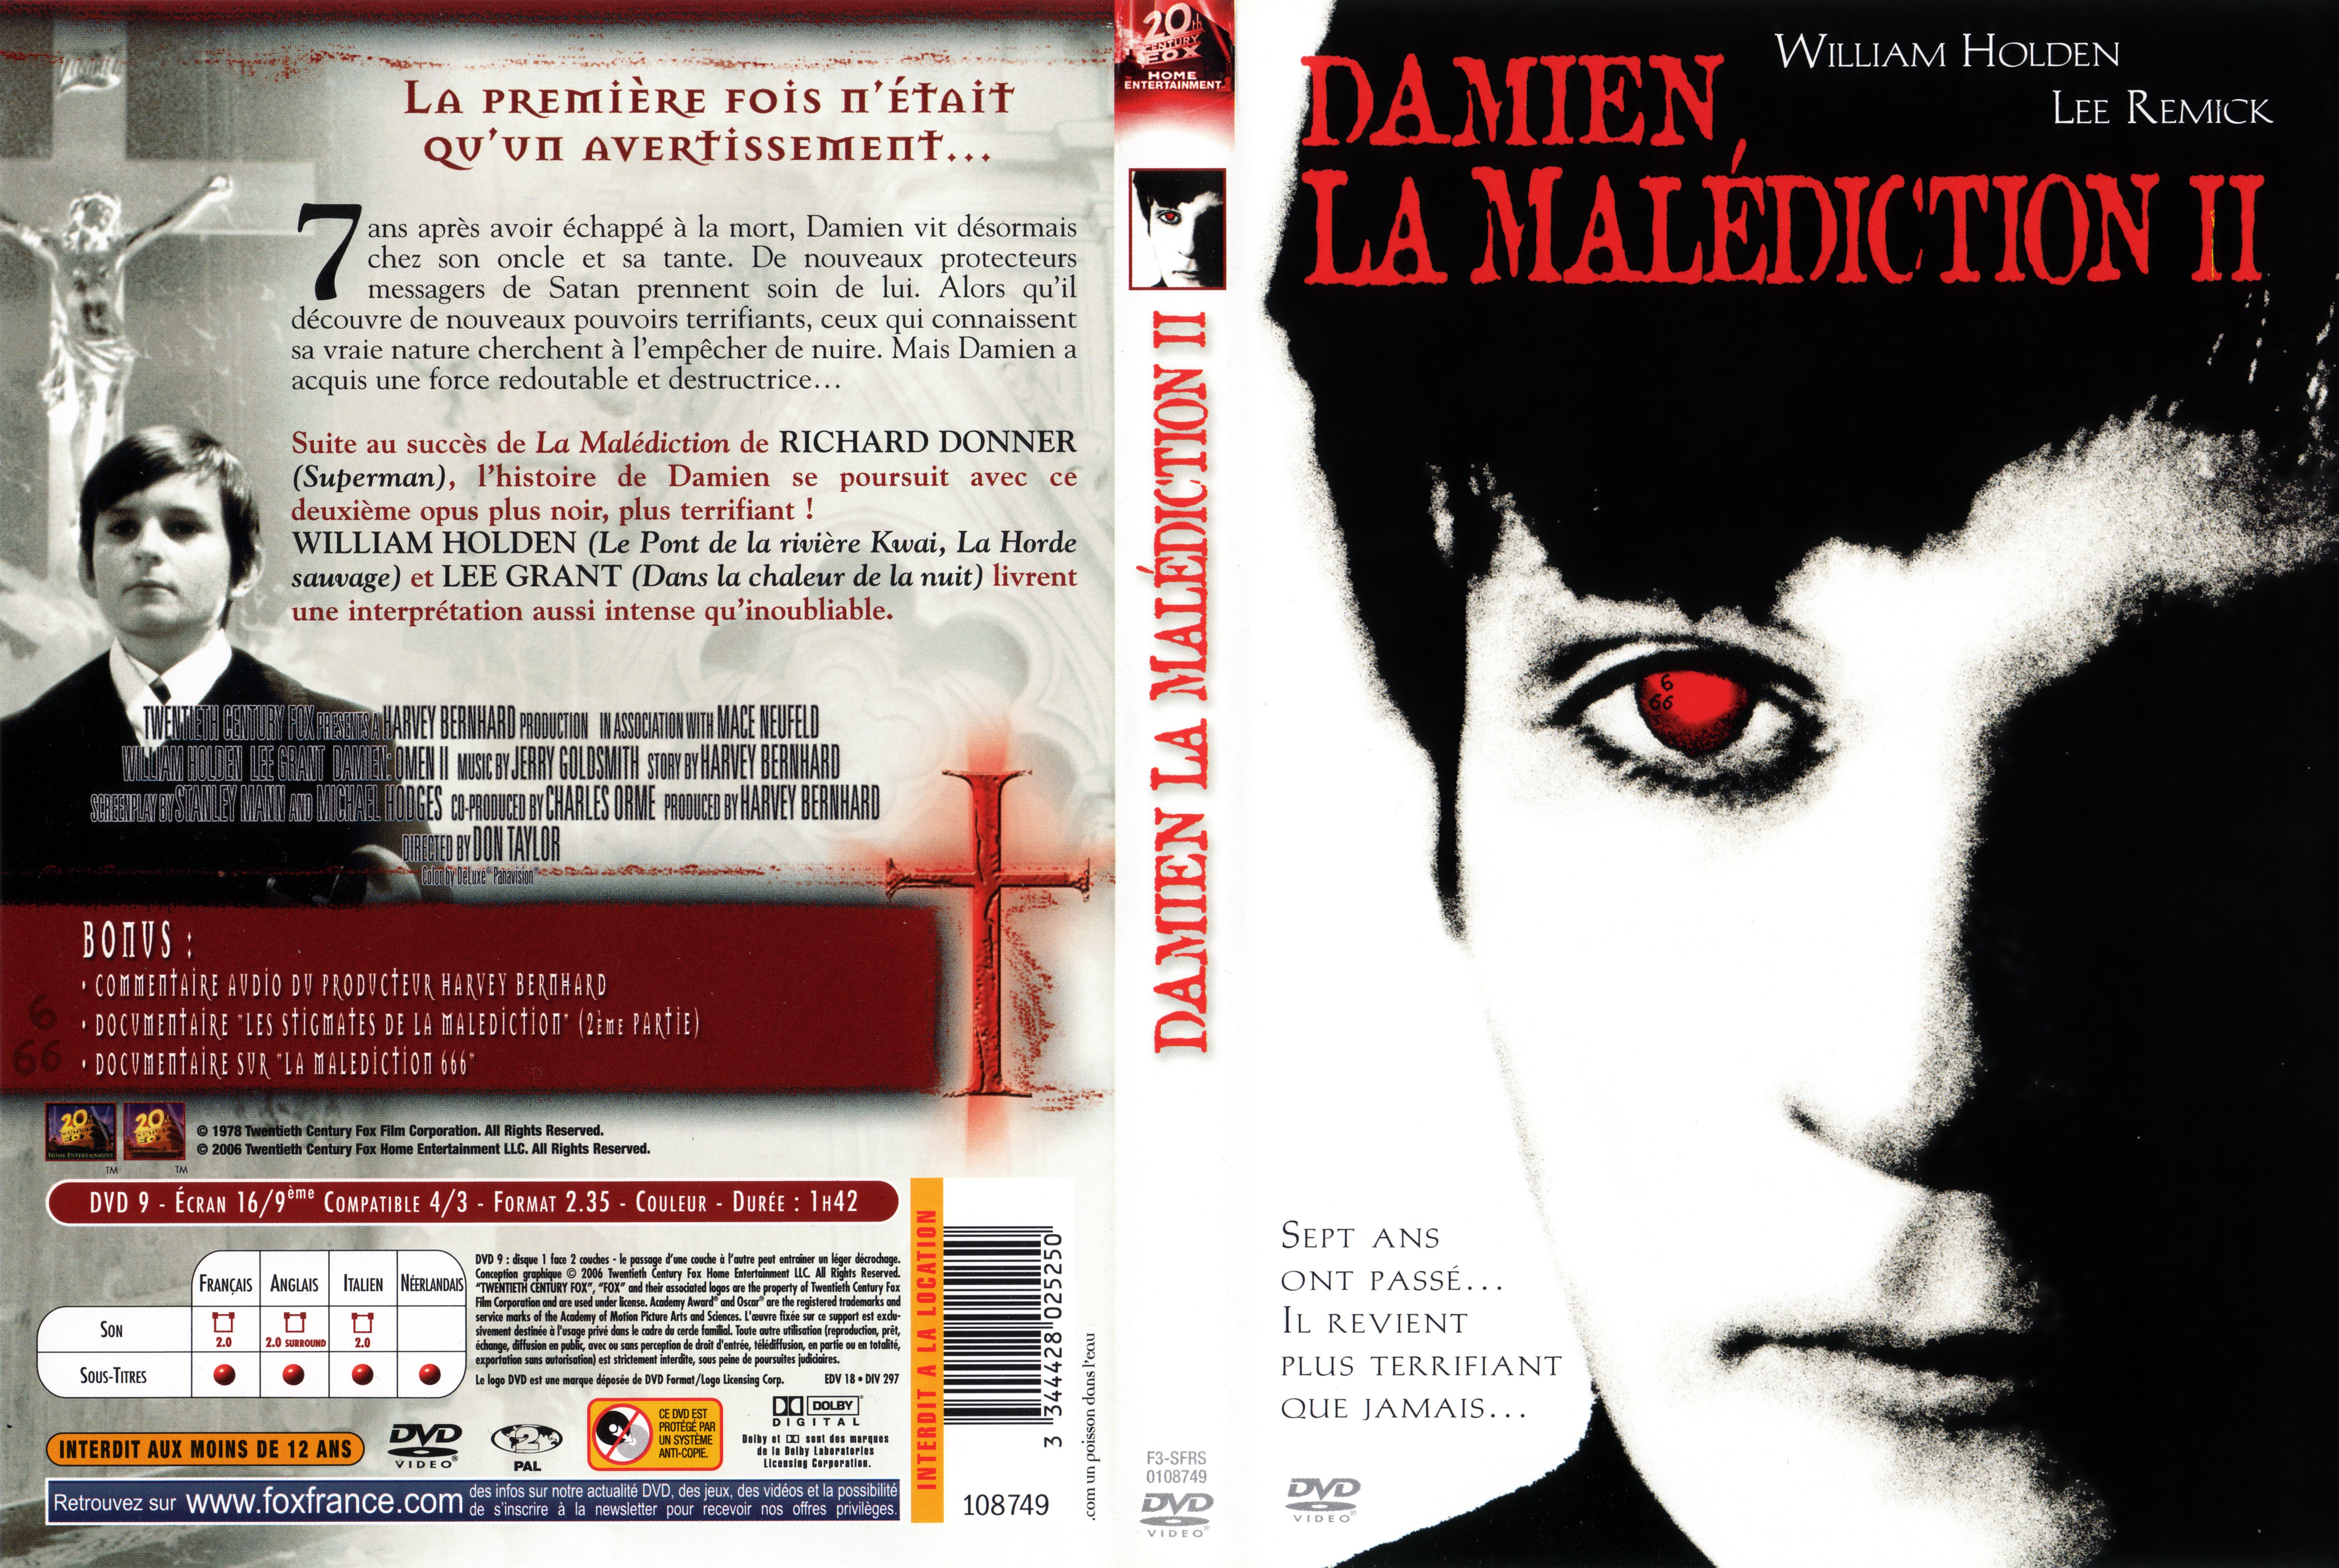 Jaquette DVD La maldiction 2 v2